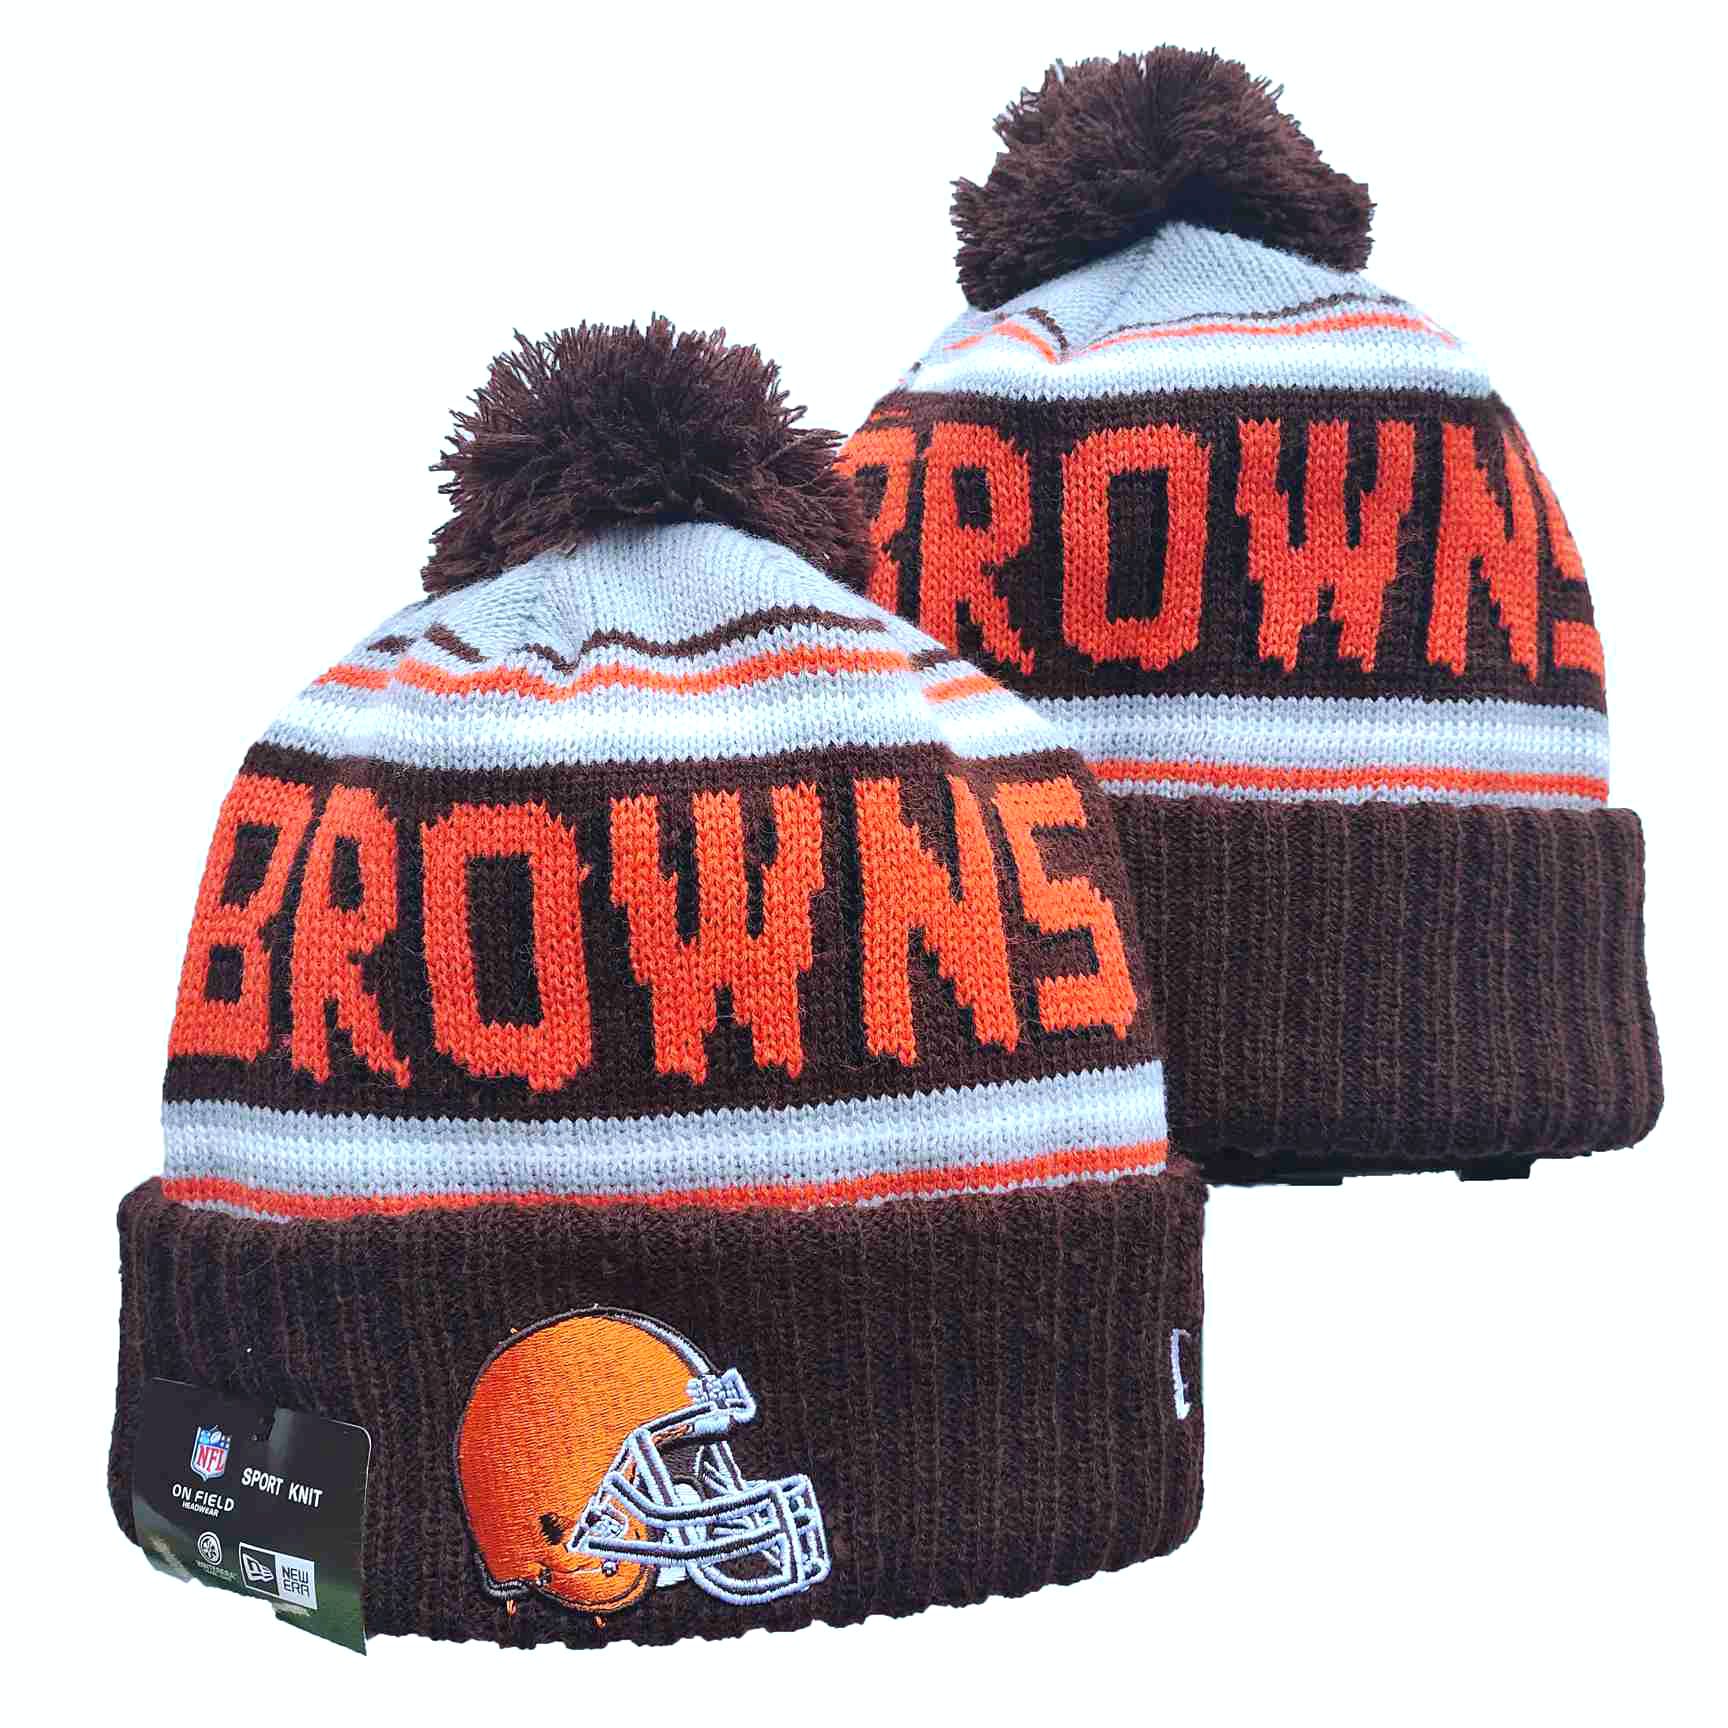 Browns Team Logo Brown Pom Cuffed Knit Hat YD